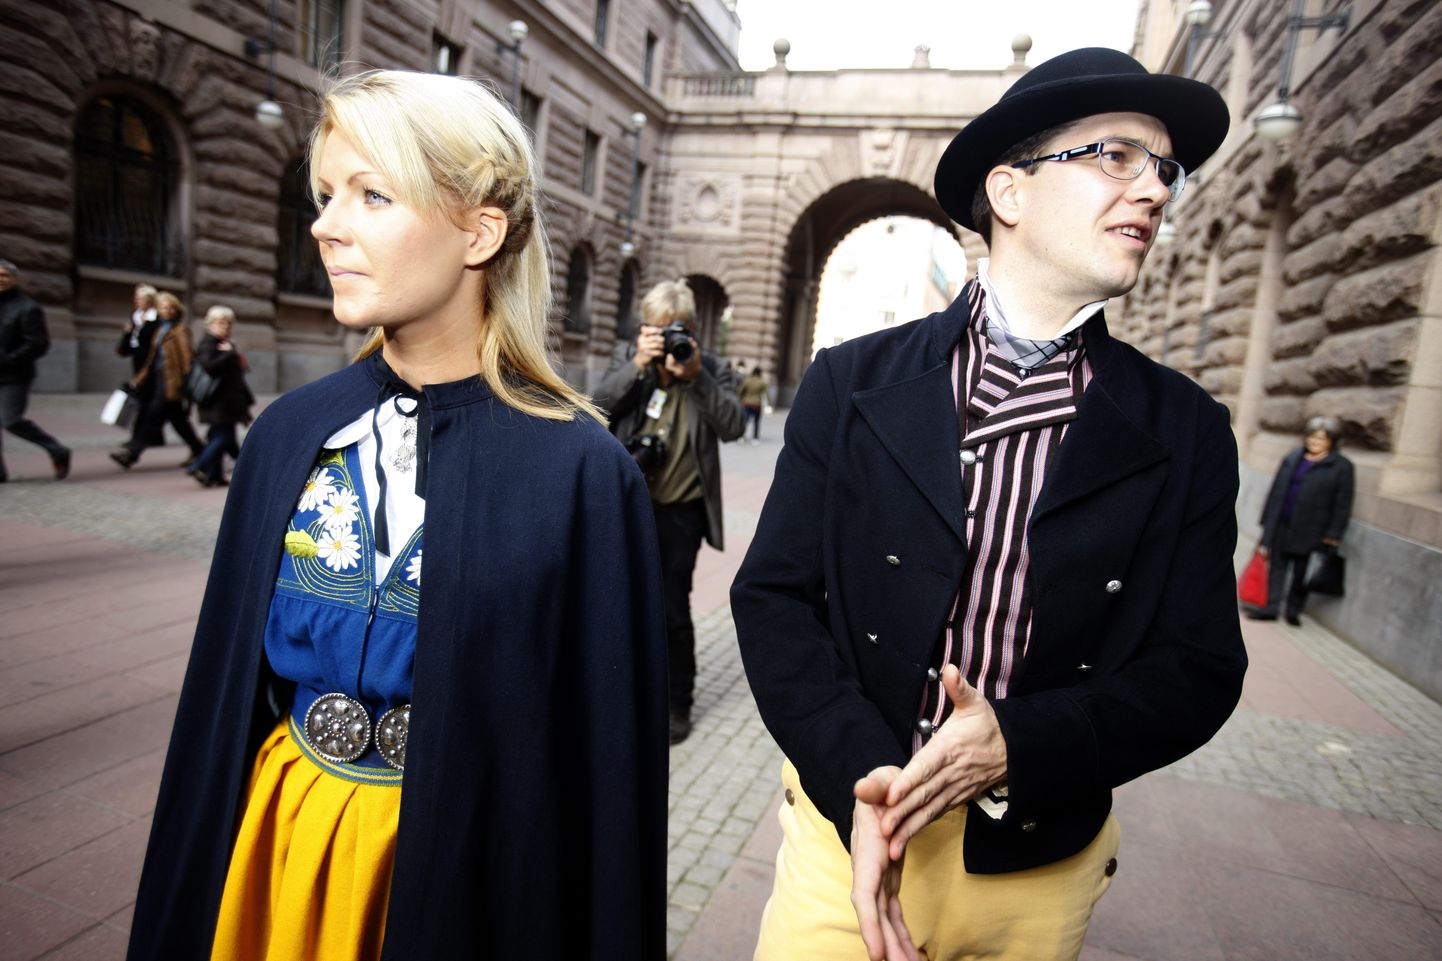 Rootsi Demokraatide juht Jimmie Åkesson ja tema abikaasa Louise Erixson saabuvad rahvarõivastes Riksdagi istungjärgu avamisele.